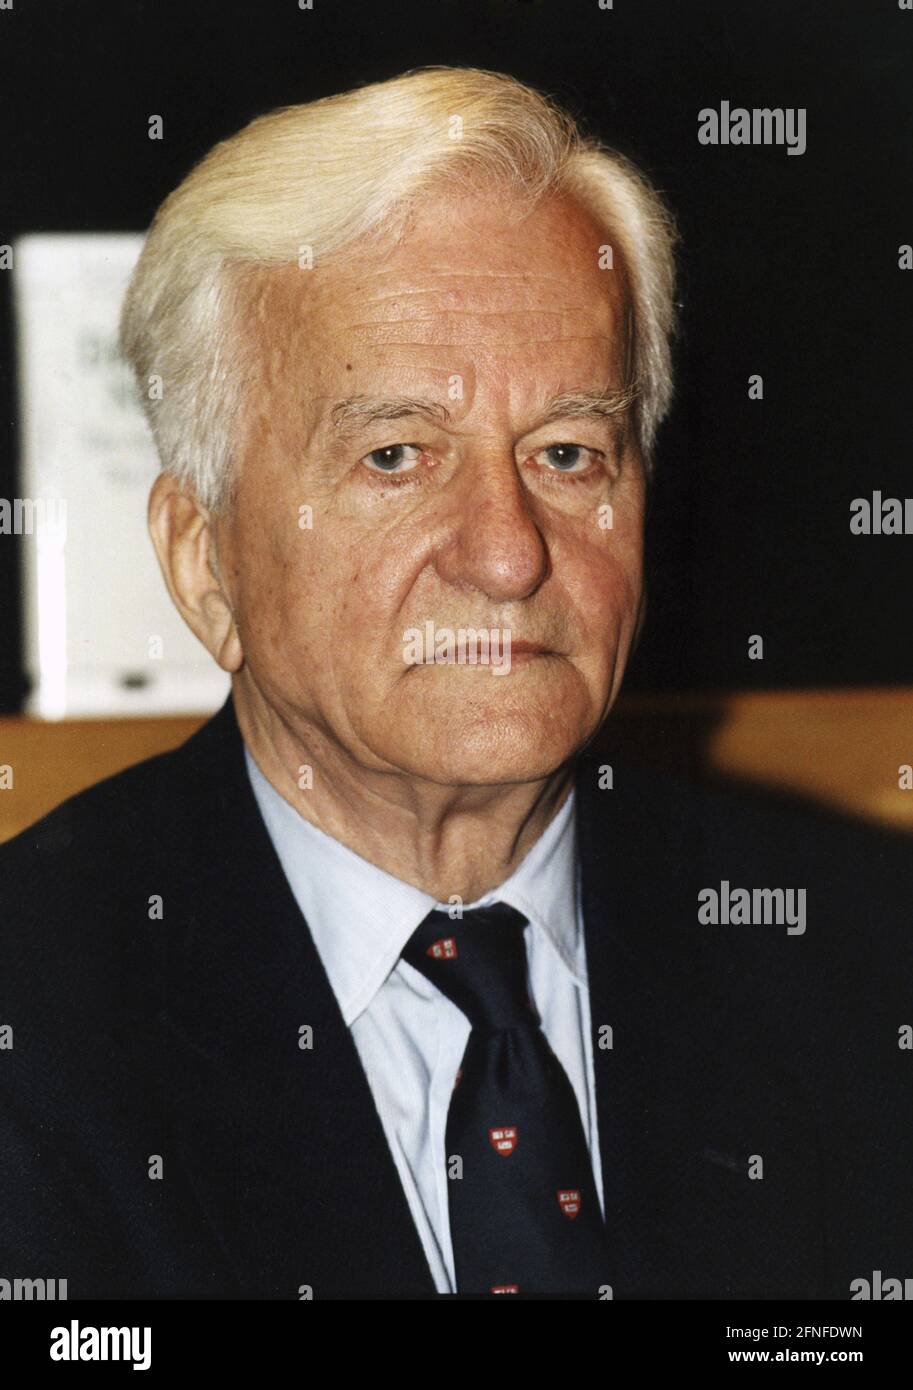 Richard von Weizäcker, ehemaliger Bundespräsident der Bundesrepublik Deutschland (1984-1994), bei einer Veranstaltung im Deutschen Historischen Museum in Berlin. [Automatisierte Übersetzung] Stockfoto